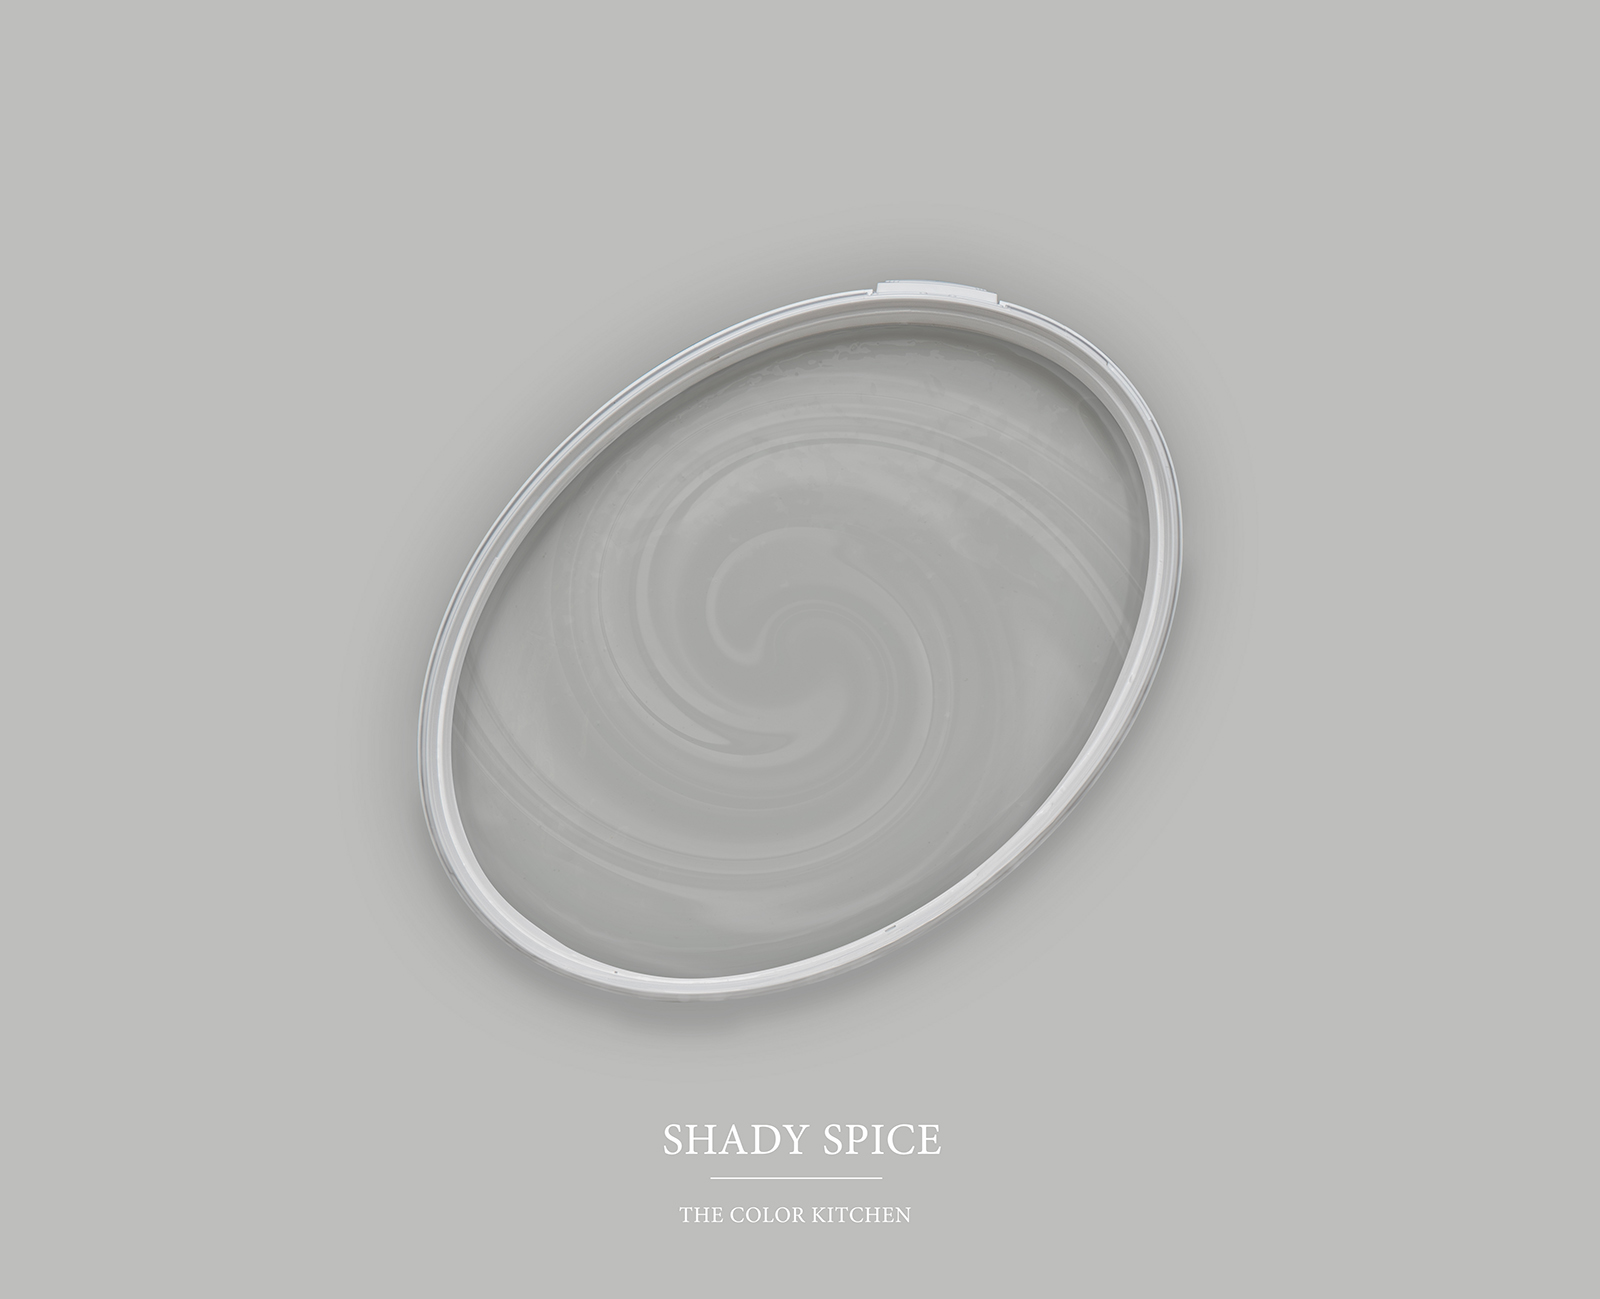 Wandfarbe in kühlem Grau »Shady Spice« TCK1004 – 5 Liter
